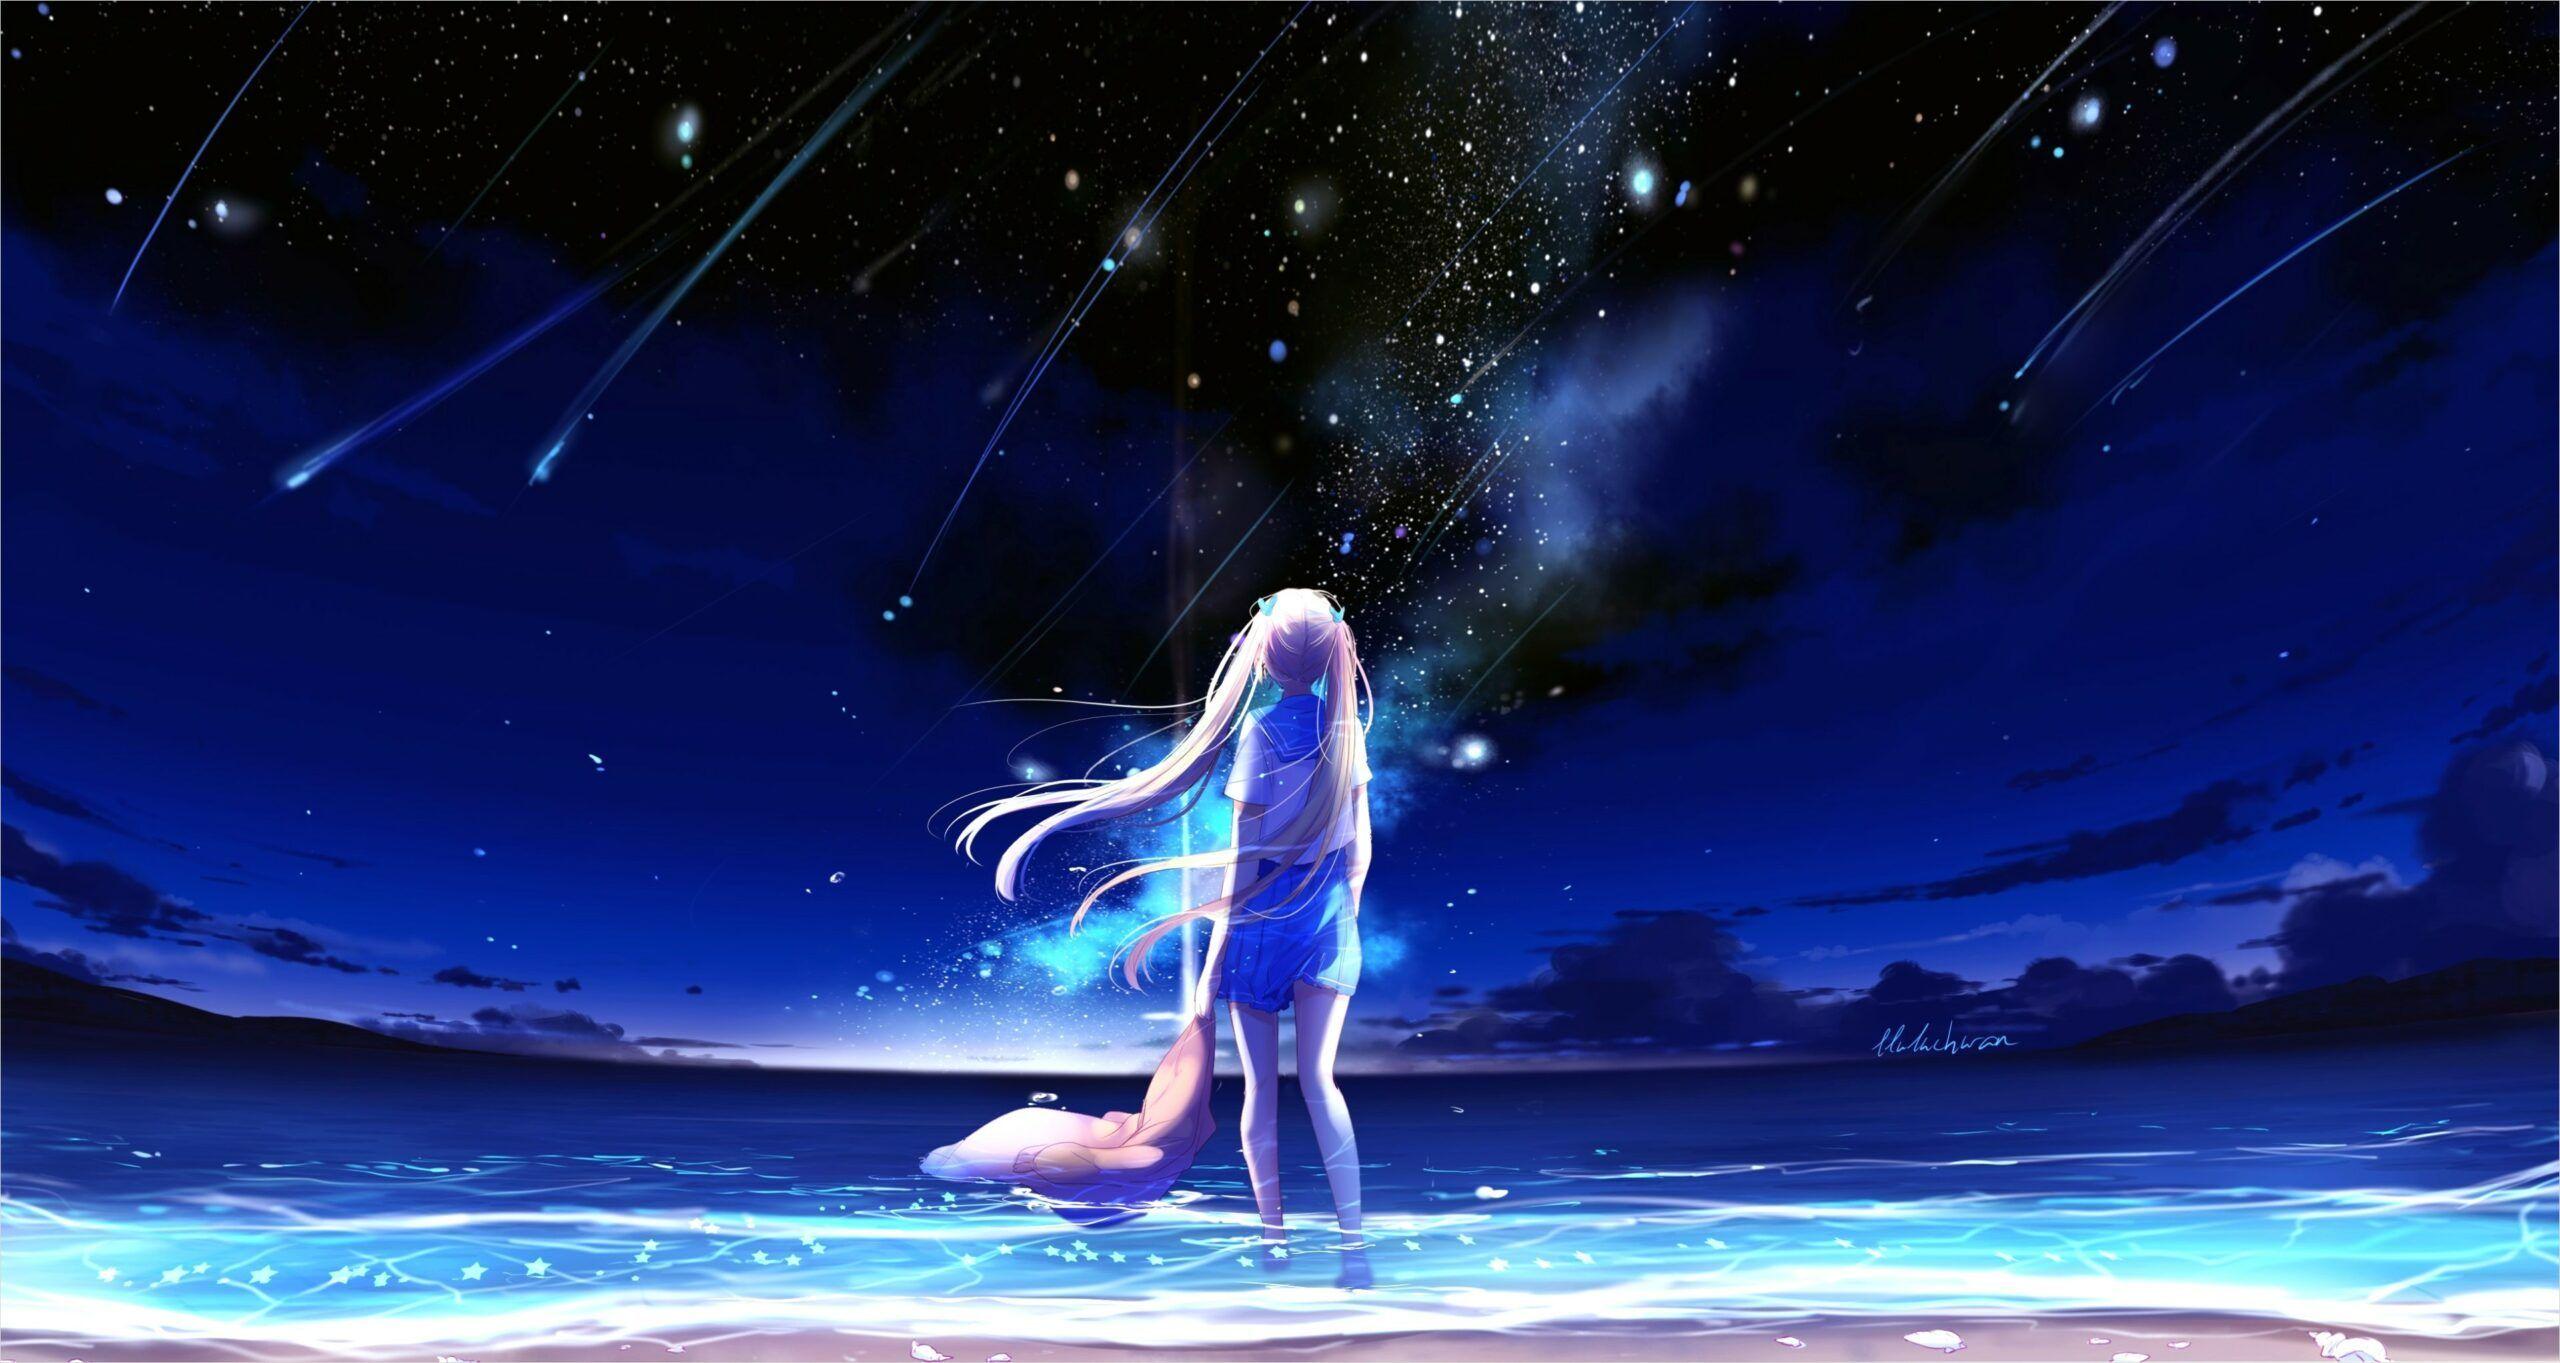 Những hình nền Anime Galaxy hoàn toàn mới lạ và đầy sáng tạo sẽ khiến bạn chìm trong thế giới ảo đầy màu sắc. Đừng bỏ qua cơ hội thưởng thức những tác phẩm nghệ thuật này để cảm nhận sự độc đáo và thú vị của Anime.